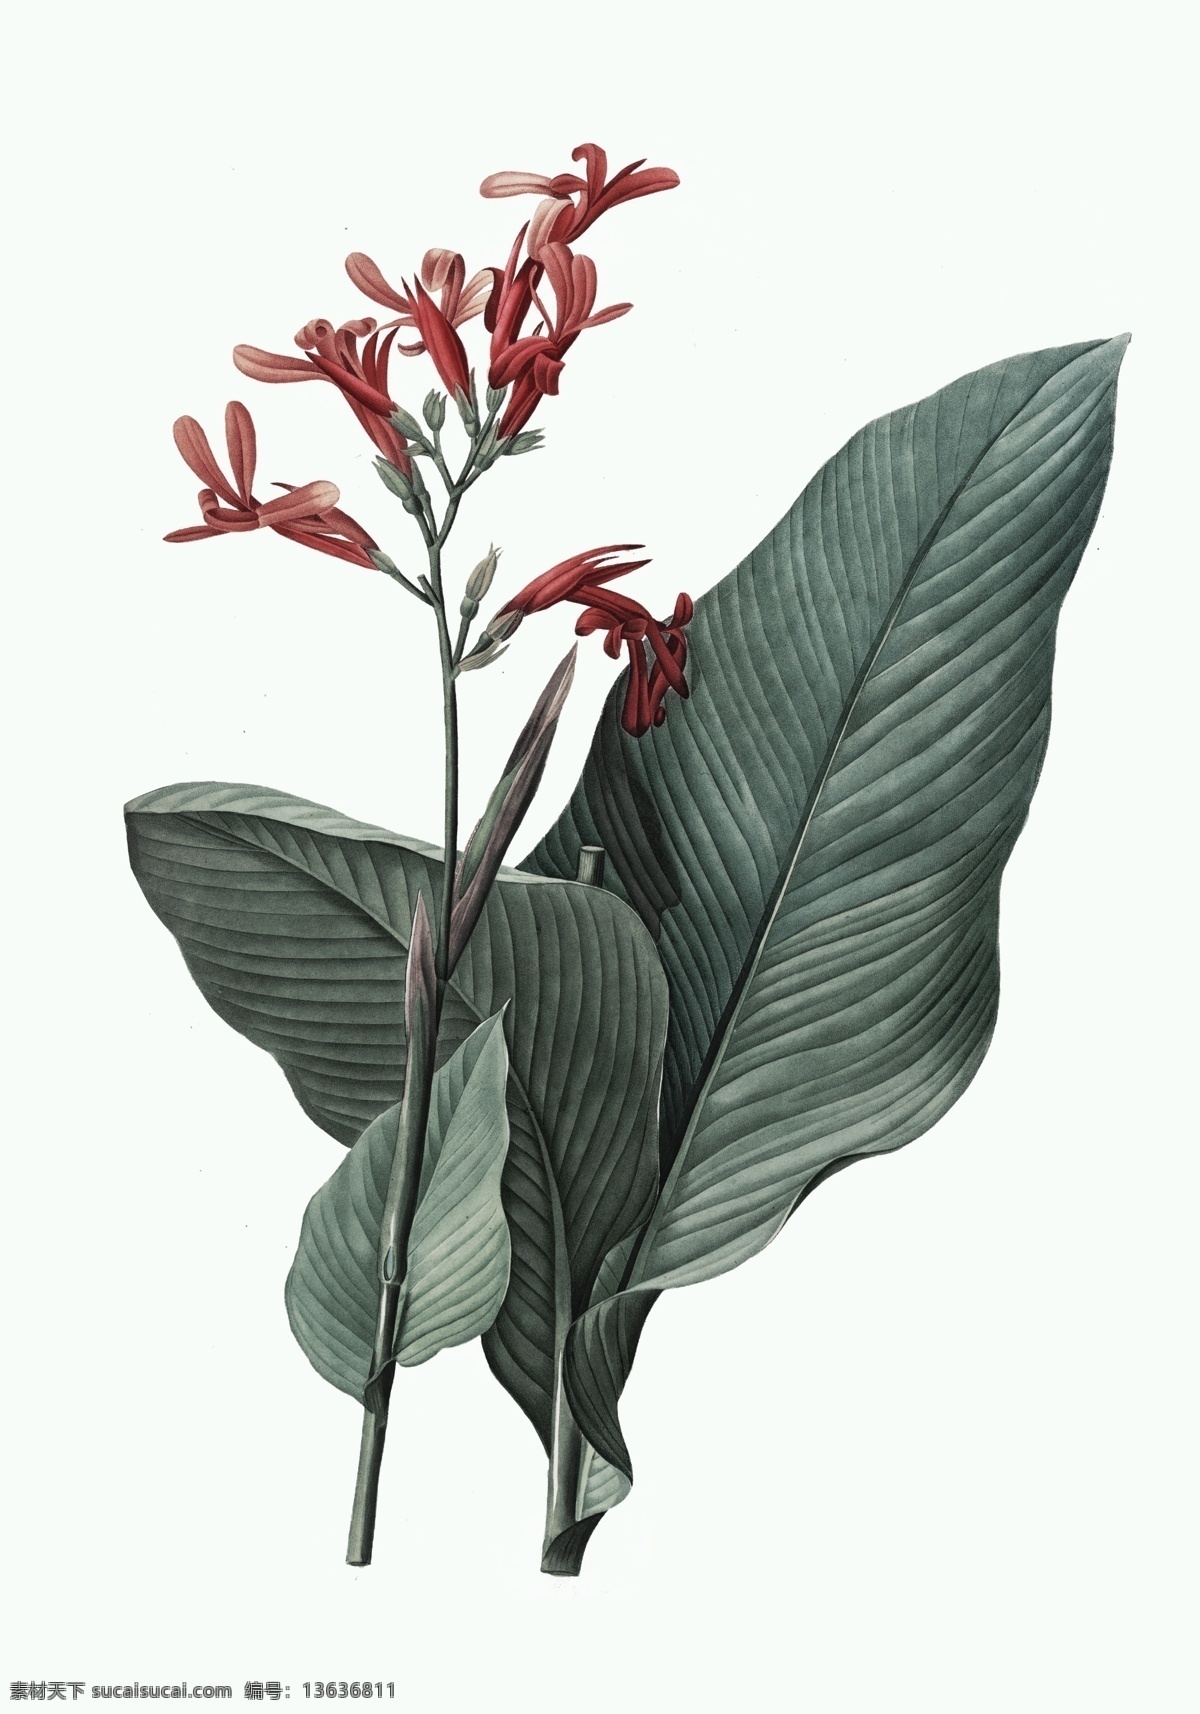 贝拉 贝罗 装饰画 暗香 原稿 贝拉贝罗 经典 植物 国外 素格 艺术微喷 高清 印刷 大图 手绘 花草 生物世界